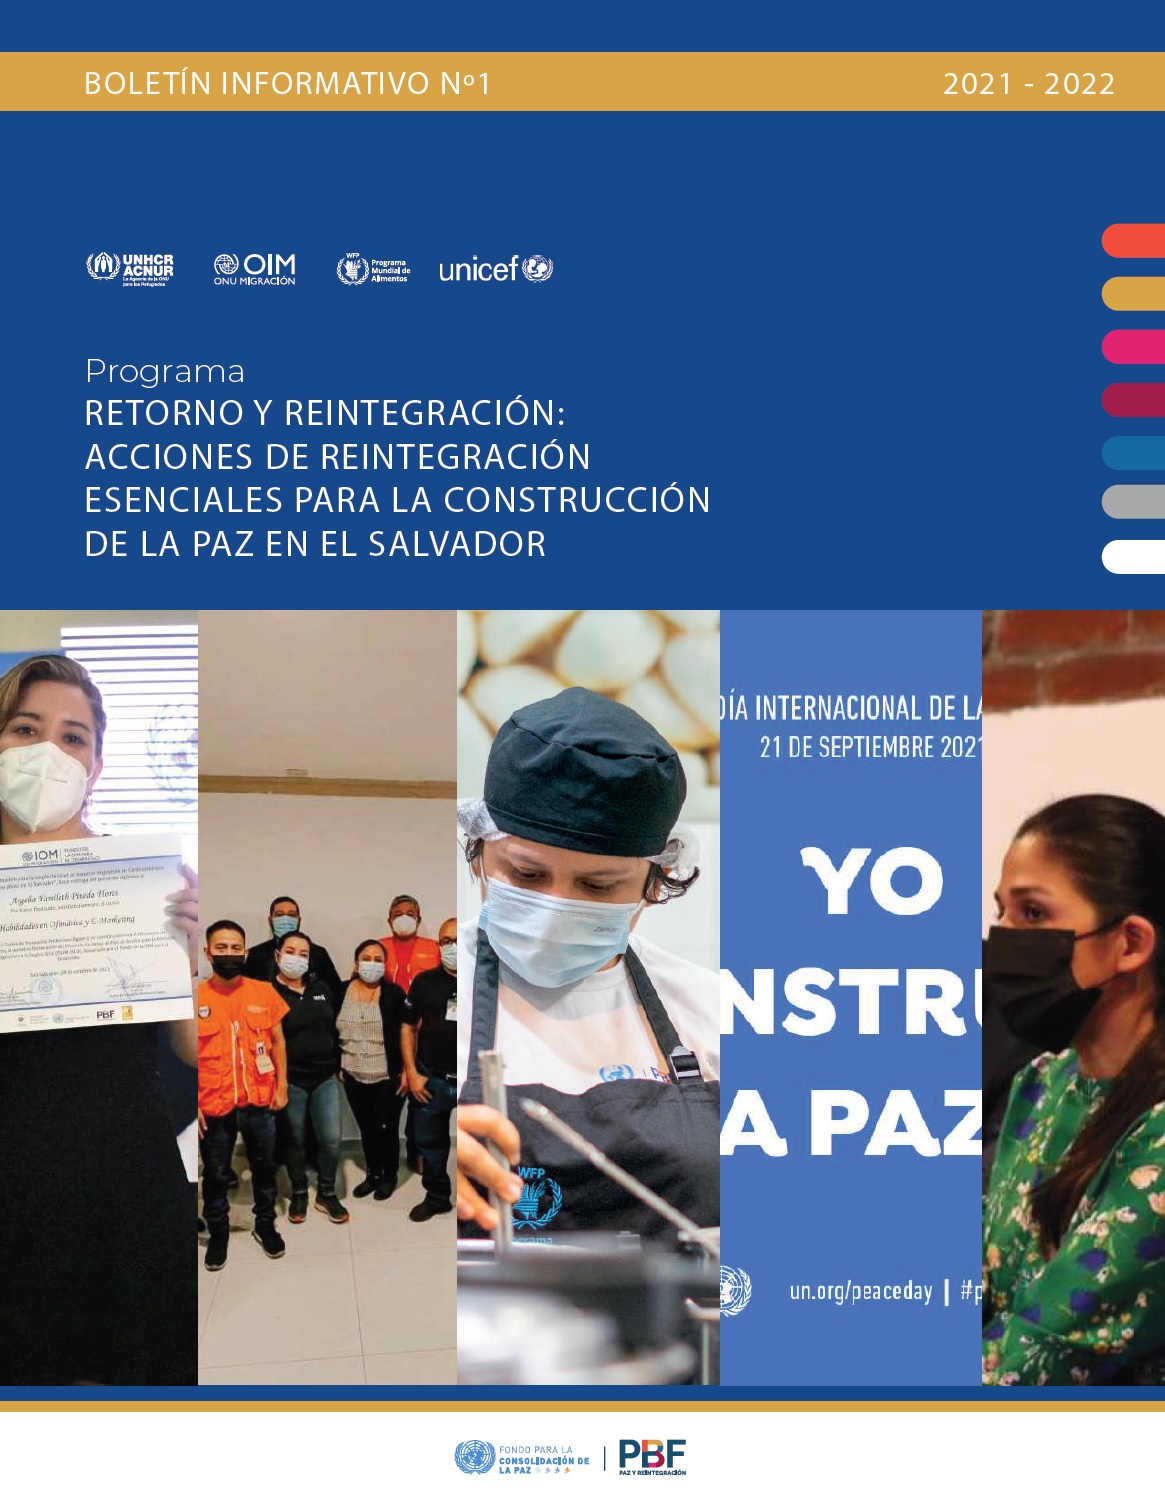 Boletín informativo No.1 Retorno y reintegración:acciones de reintegración esenciales para la construcciónde la paz en El Salvador